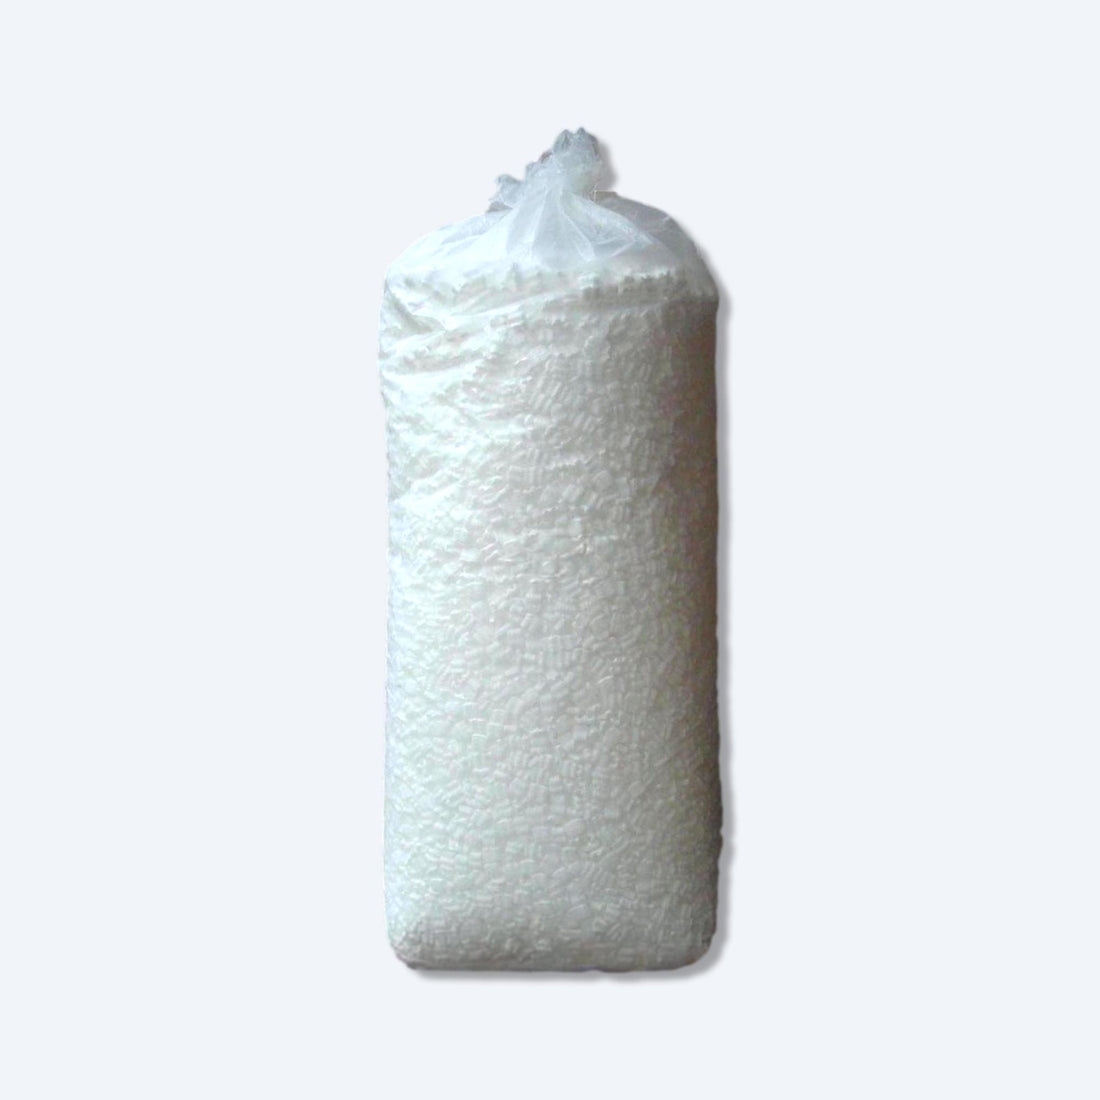  白色的發泡膠粒包裝物料，用於填充包裝，綁紮在透明塑膠袋中，準備供應香港批發市場，理想用於各式產品的安全包裝和運輸保護。